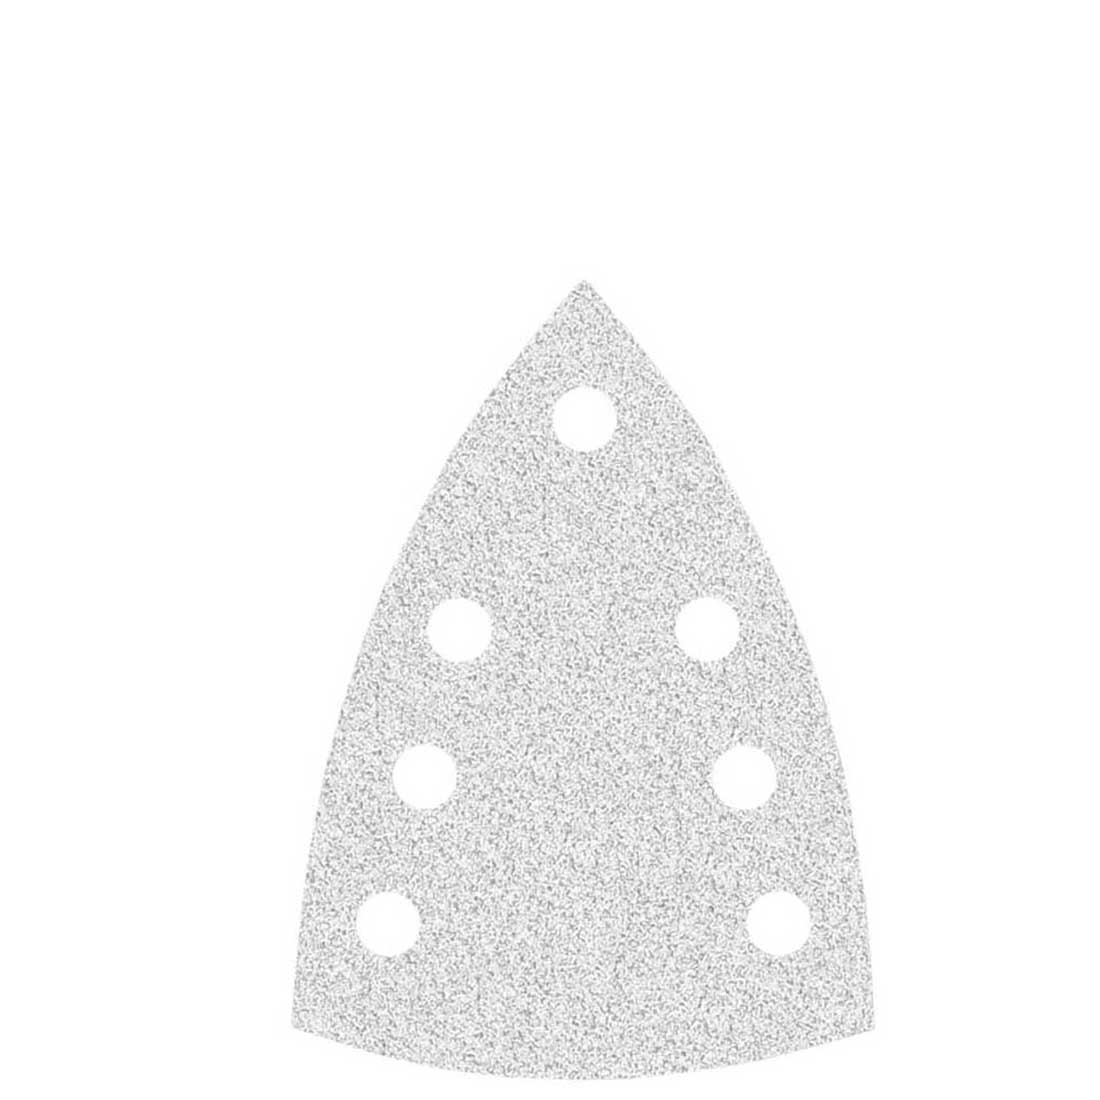 Carte abrasive velcrate MioTools per levigatrici a delta, G40–400, 150 x 100 mm / 7 fori / corindone normale con stearato